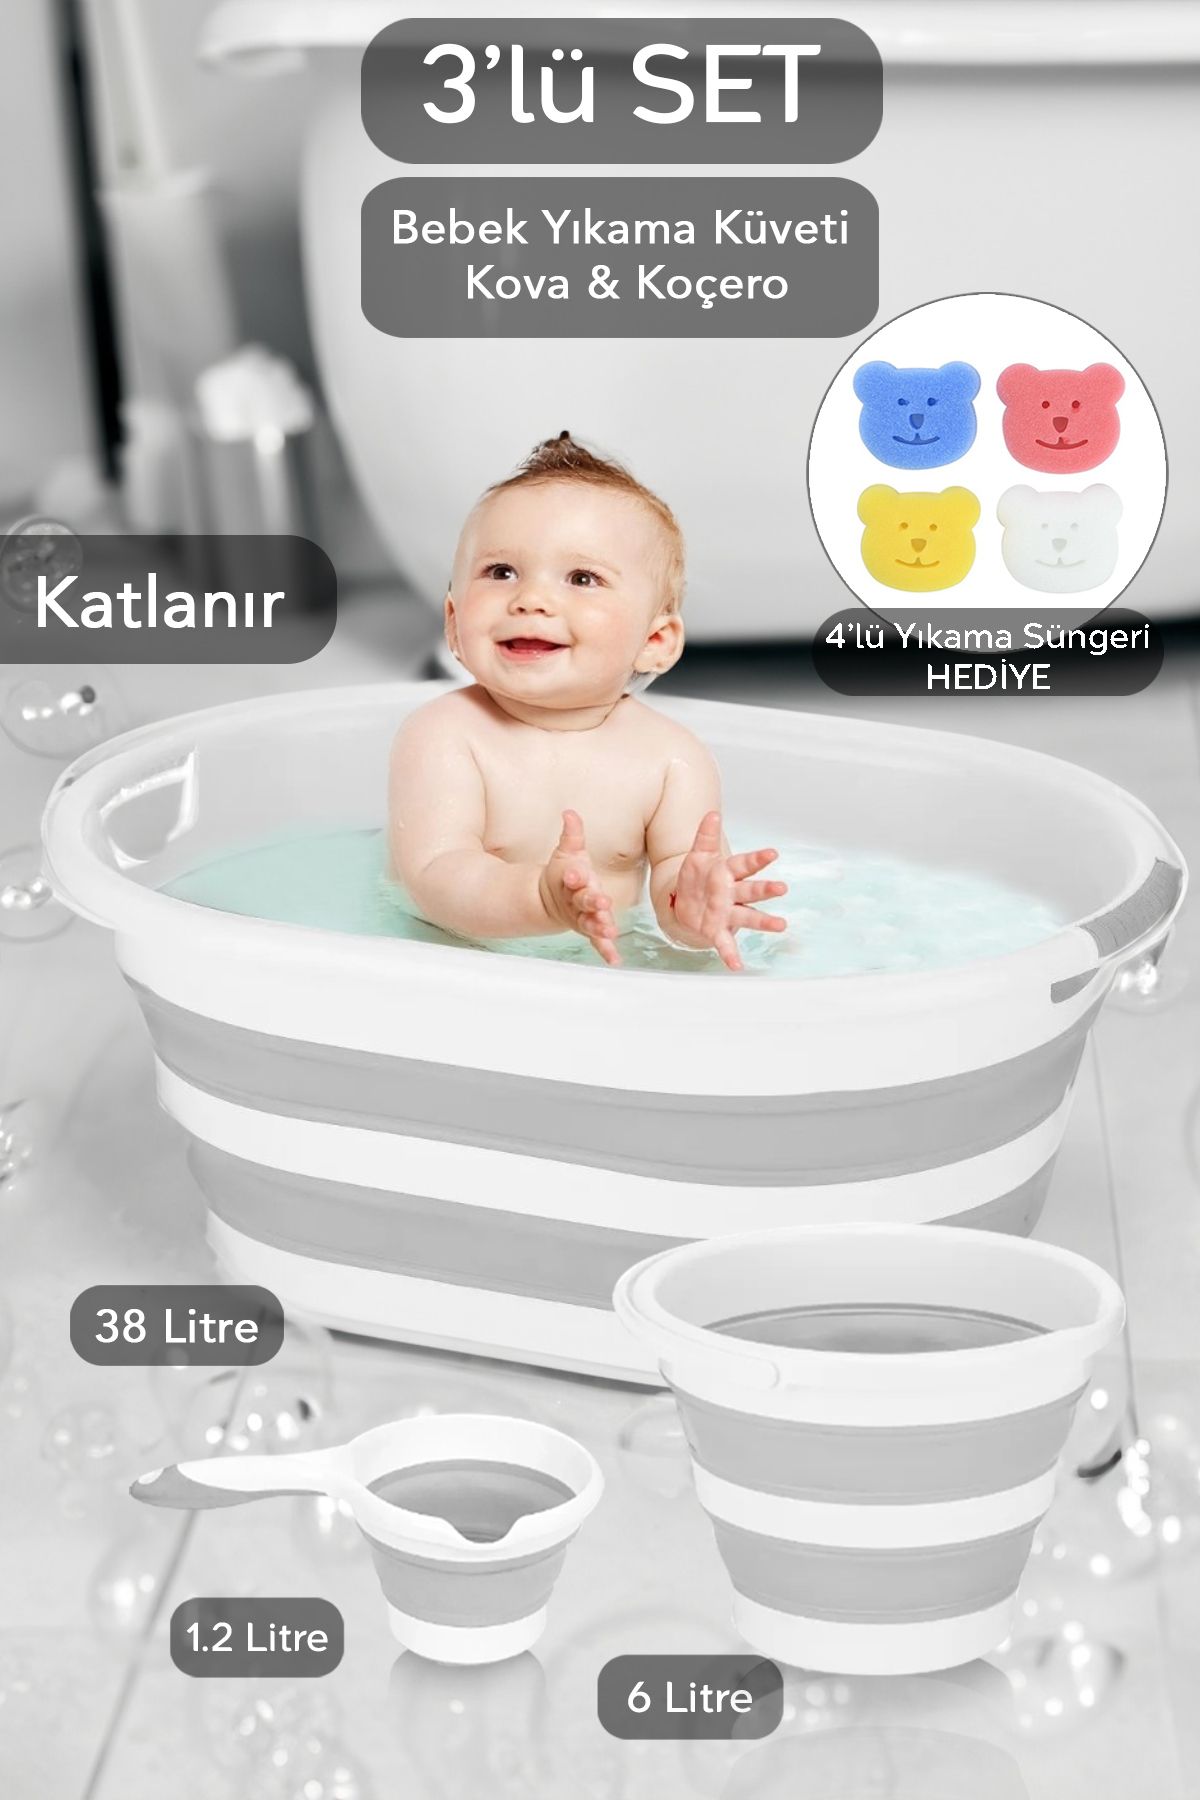 Meleni Baby 3'lü Set Katlanır Bebek Banyo Yıkama Seti Küvet Büyük Boy - Su Kovası - Maşrapa Gri Sünger Hediyeli